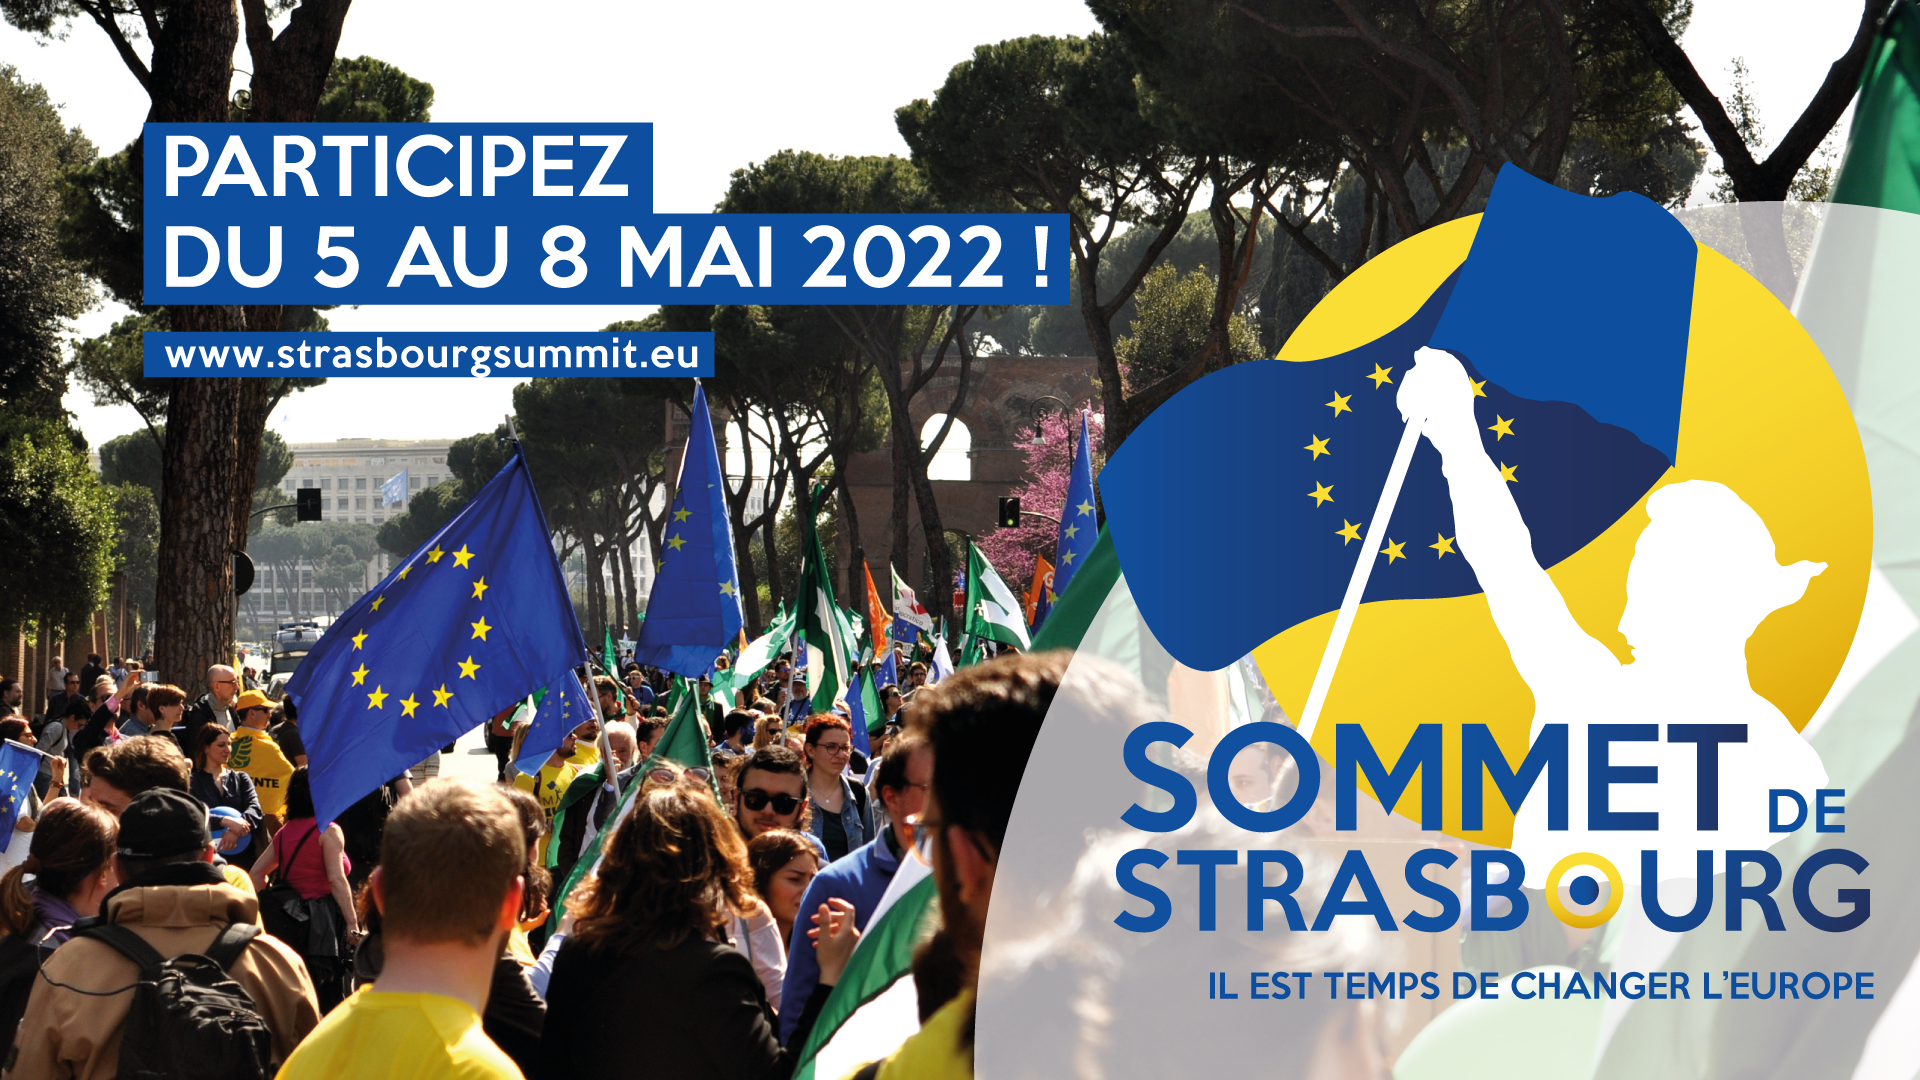 Participez au Sommet de Strasbourg du 5 au 8 mai 2022 !